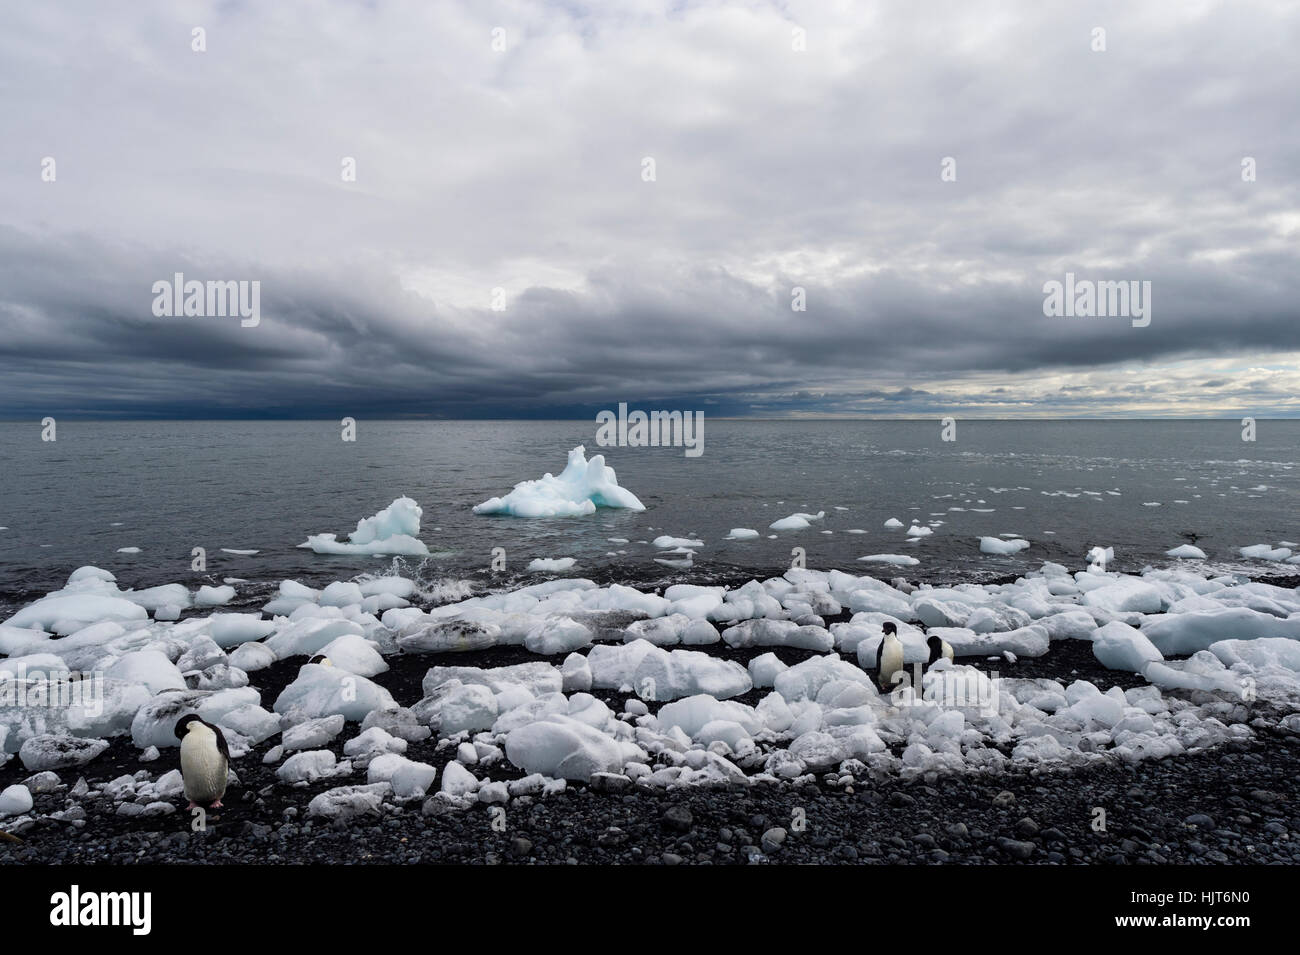 Blocs de glace d'un glacier se rassemblent le long d'une plage volcanique dans l'Antarctique. Banque D'Images